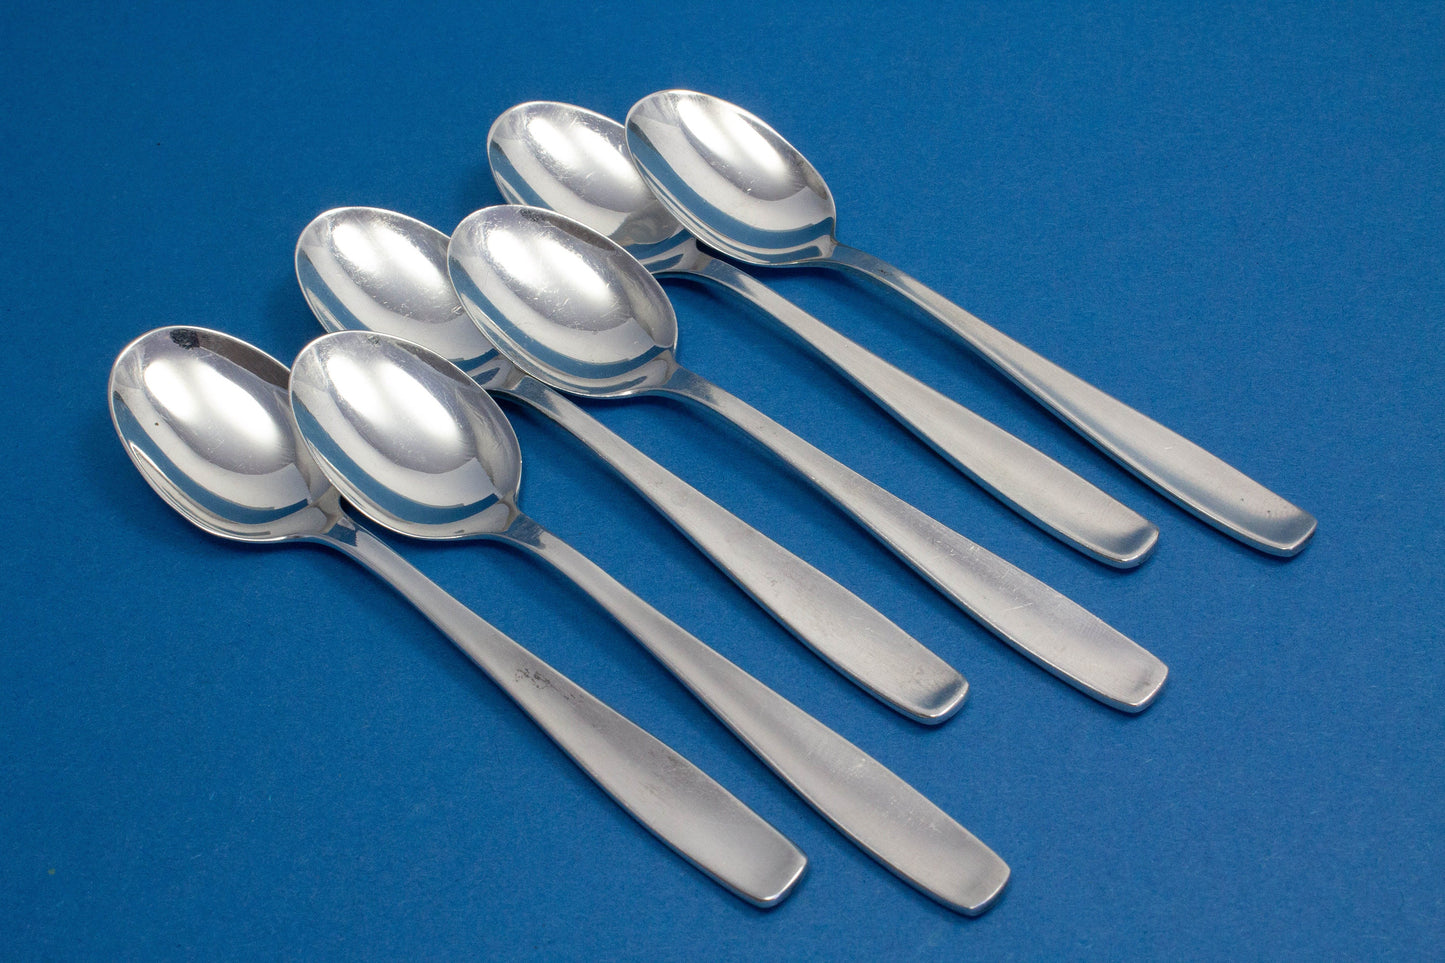 6 mocha spoons, WMF 3800 Berlin